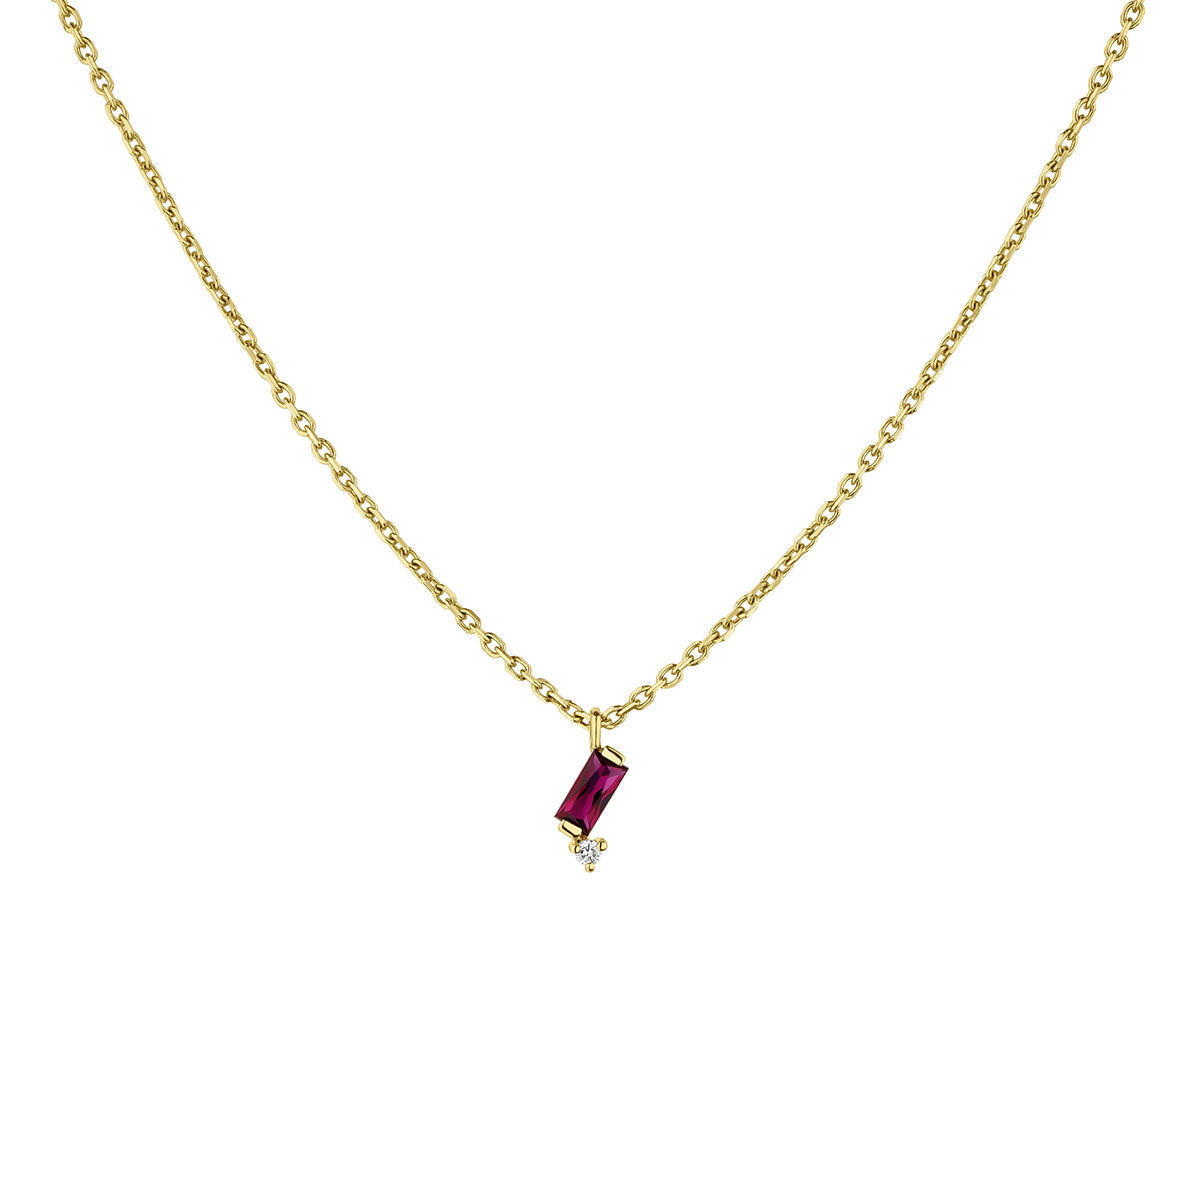 Collier avec pendentif rubis or 9 carats, J04985-02-RU, hi-res